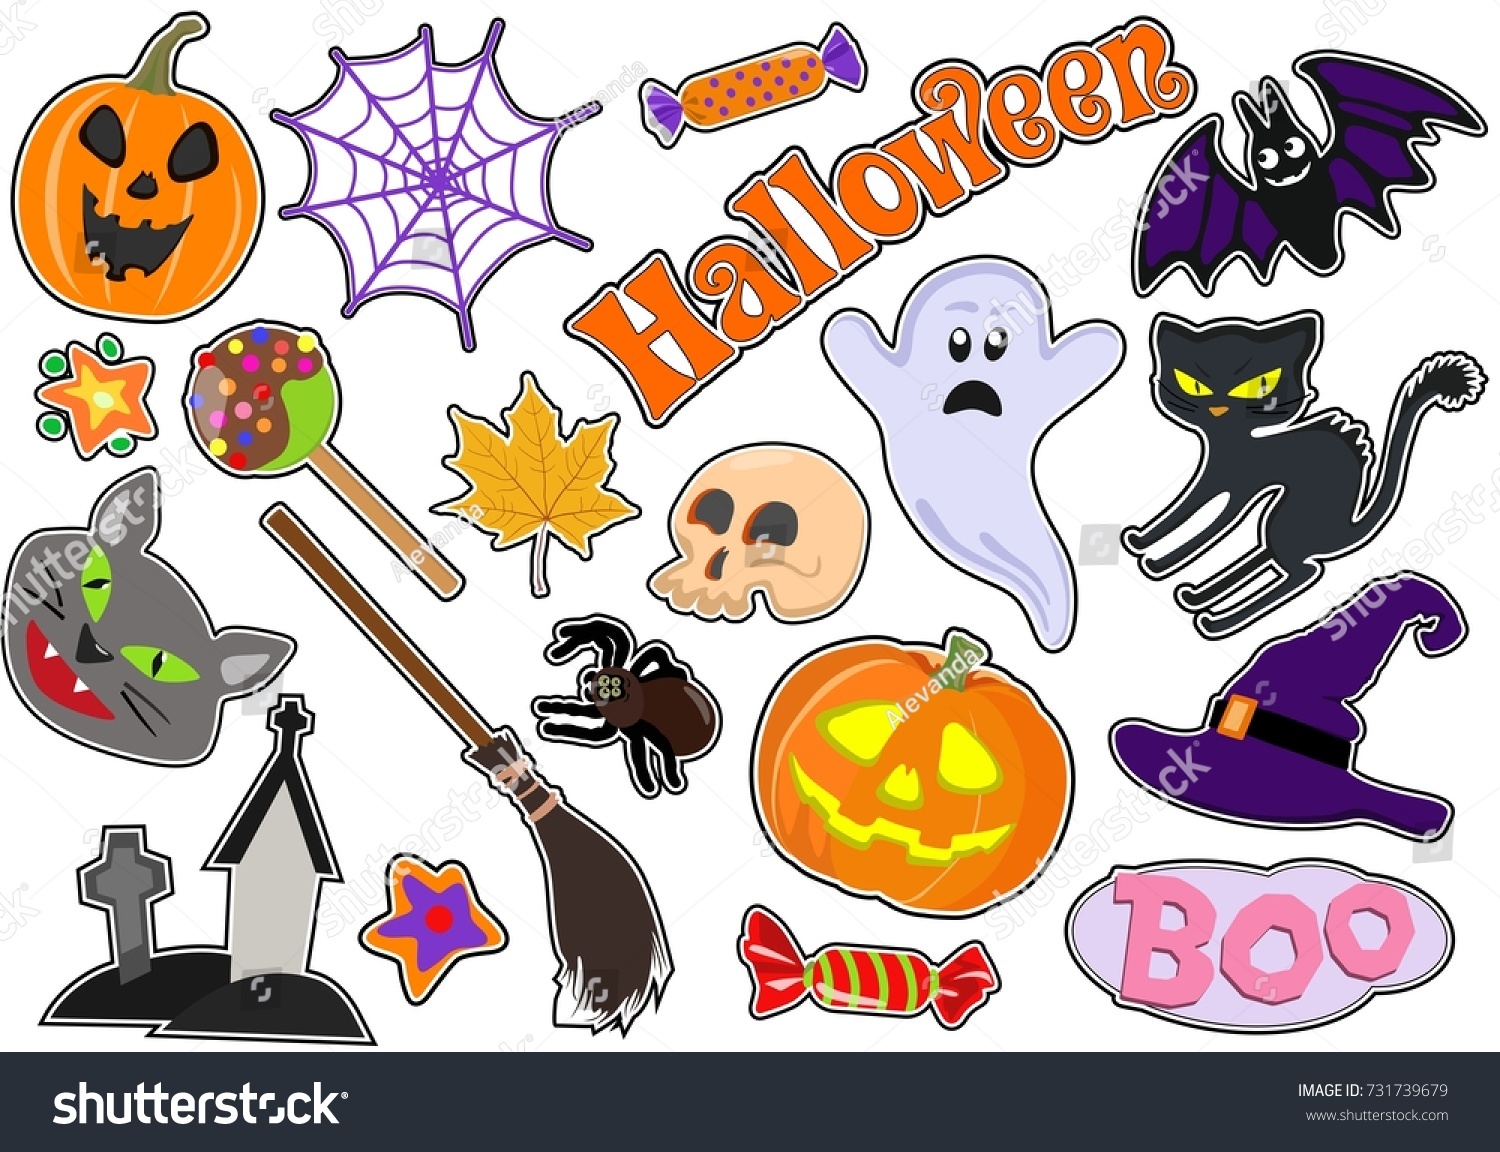 Рисунки для Хэллоуина для наклеек